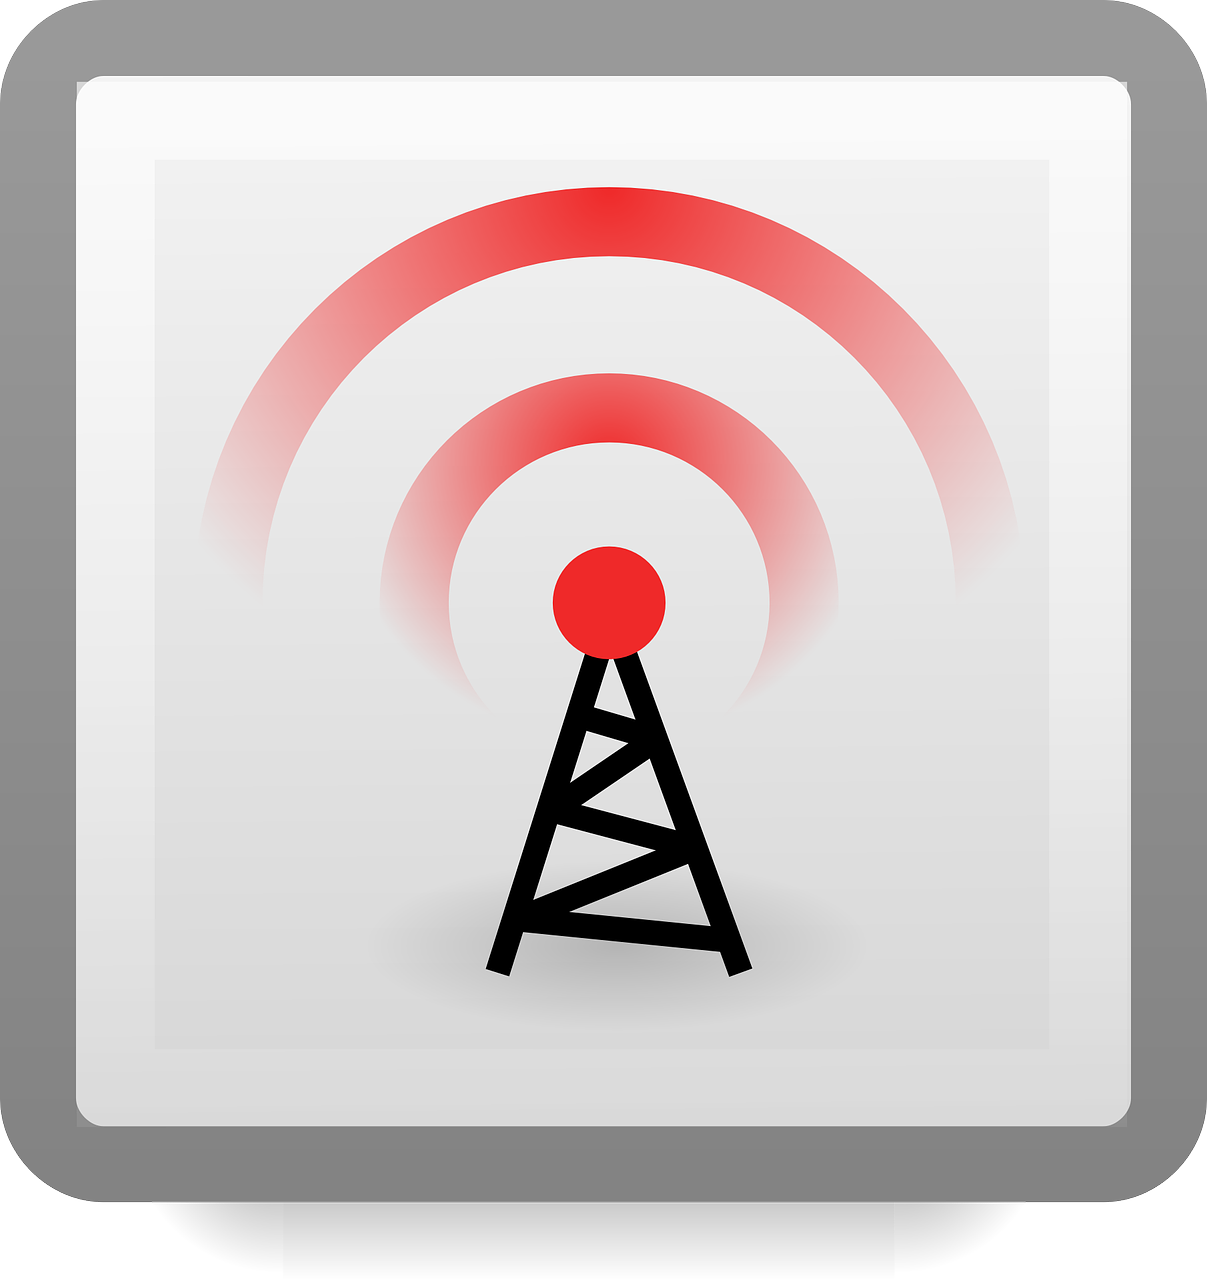 Antenna TV signal